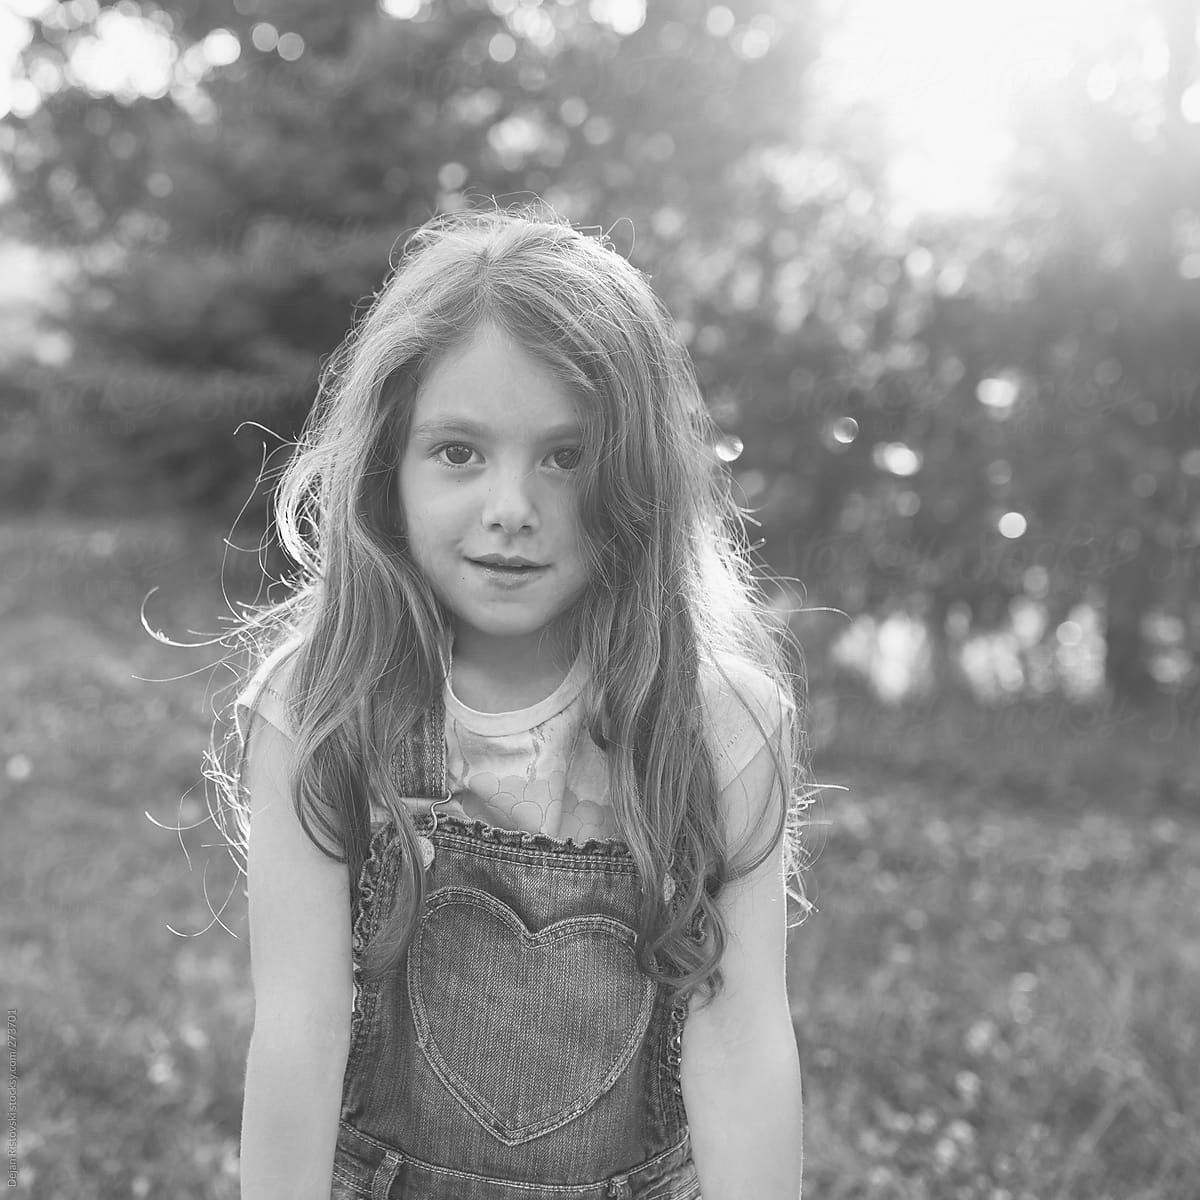 Portrait Of A Sweet Little Girl by Dejan Ristovski